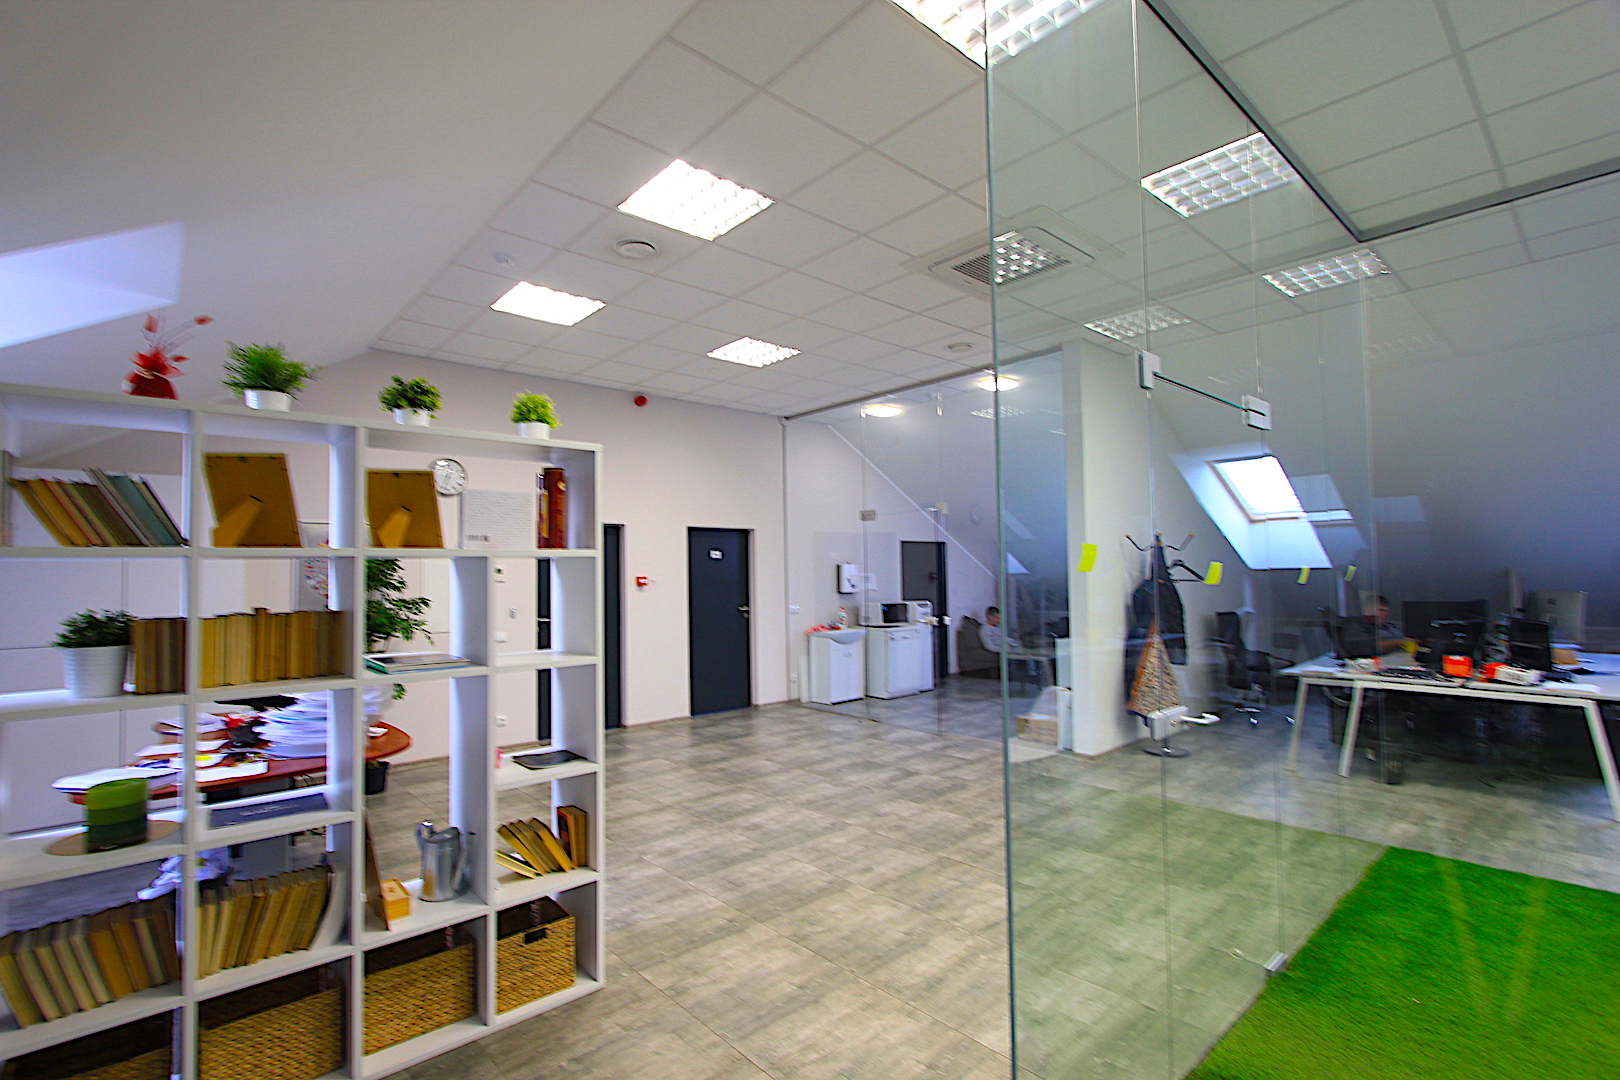 Biuro patalpų nuoma verslo centre, laisvi plotai: 311 m² - 964 m².